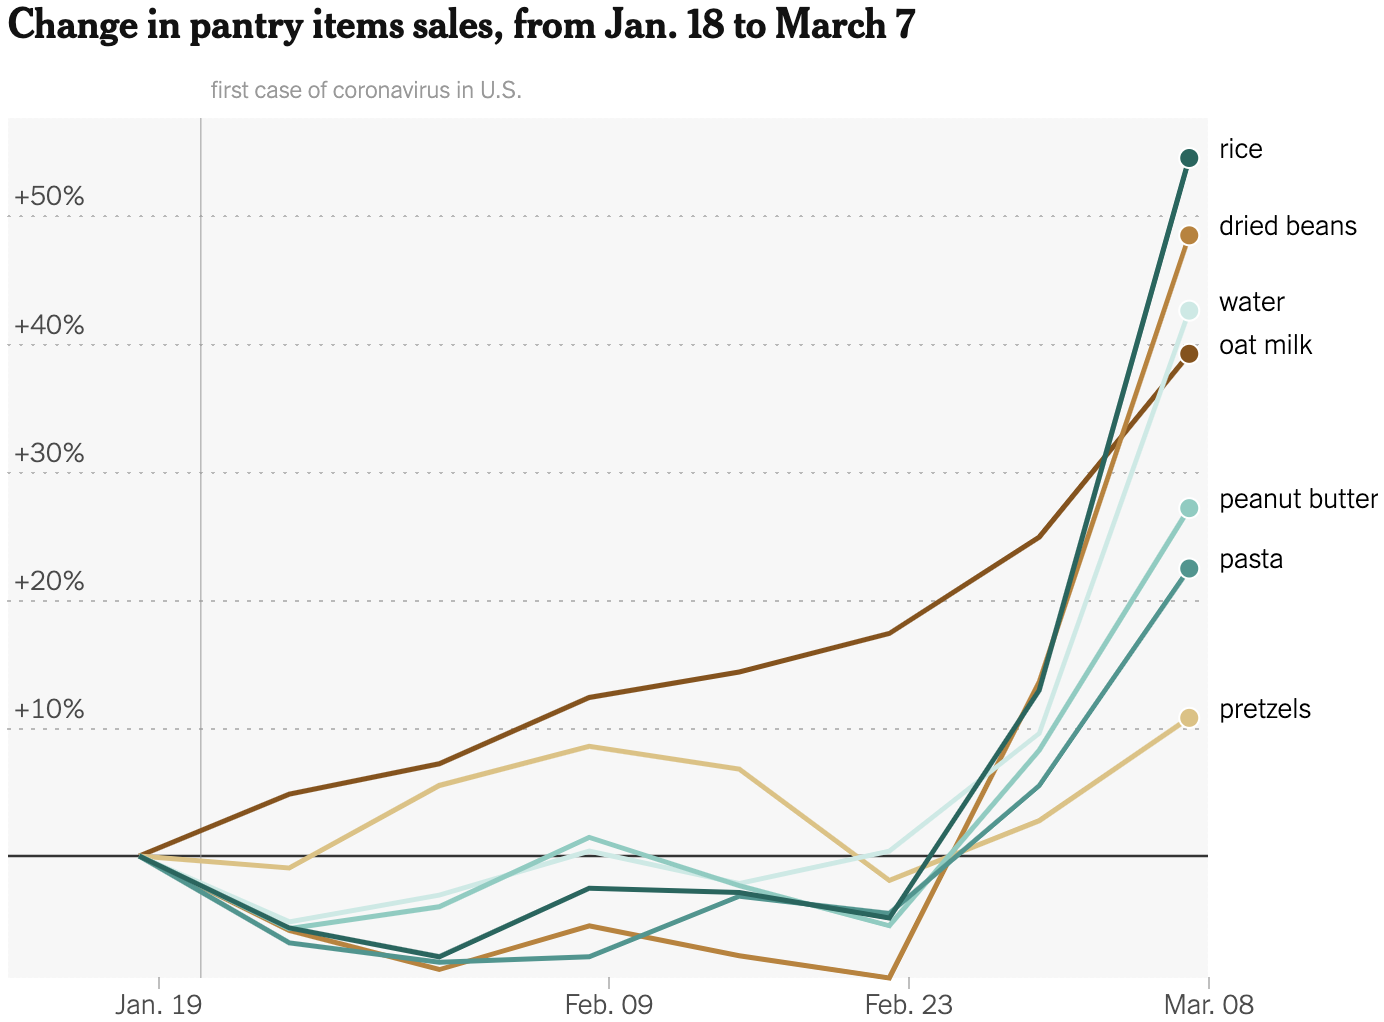 Изменение продаж разных продовольственных товаров в США с 18 января по 7 марта 2020 года: риса, сушеных бобов, воды, овсяного молока, арахисового масла, пасты, кренделей. Источник: The New York Times